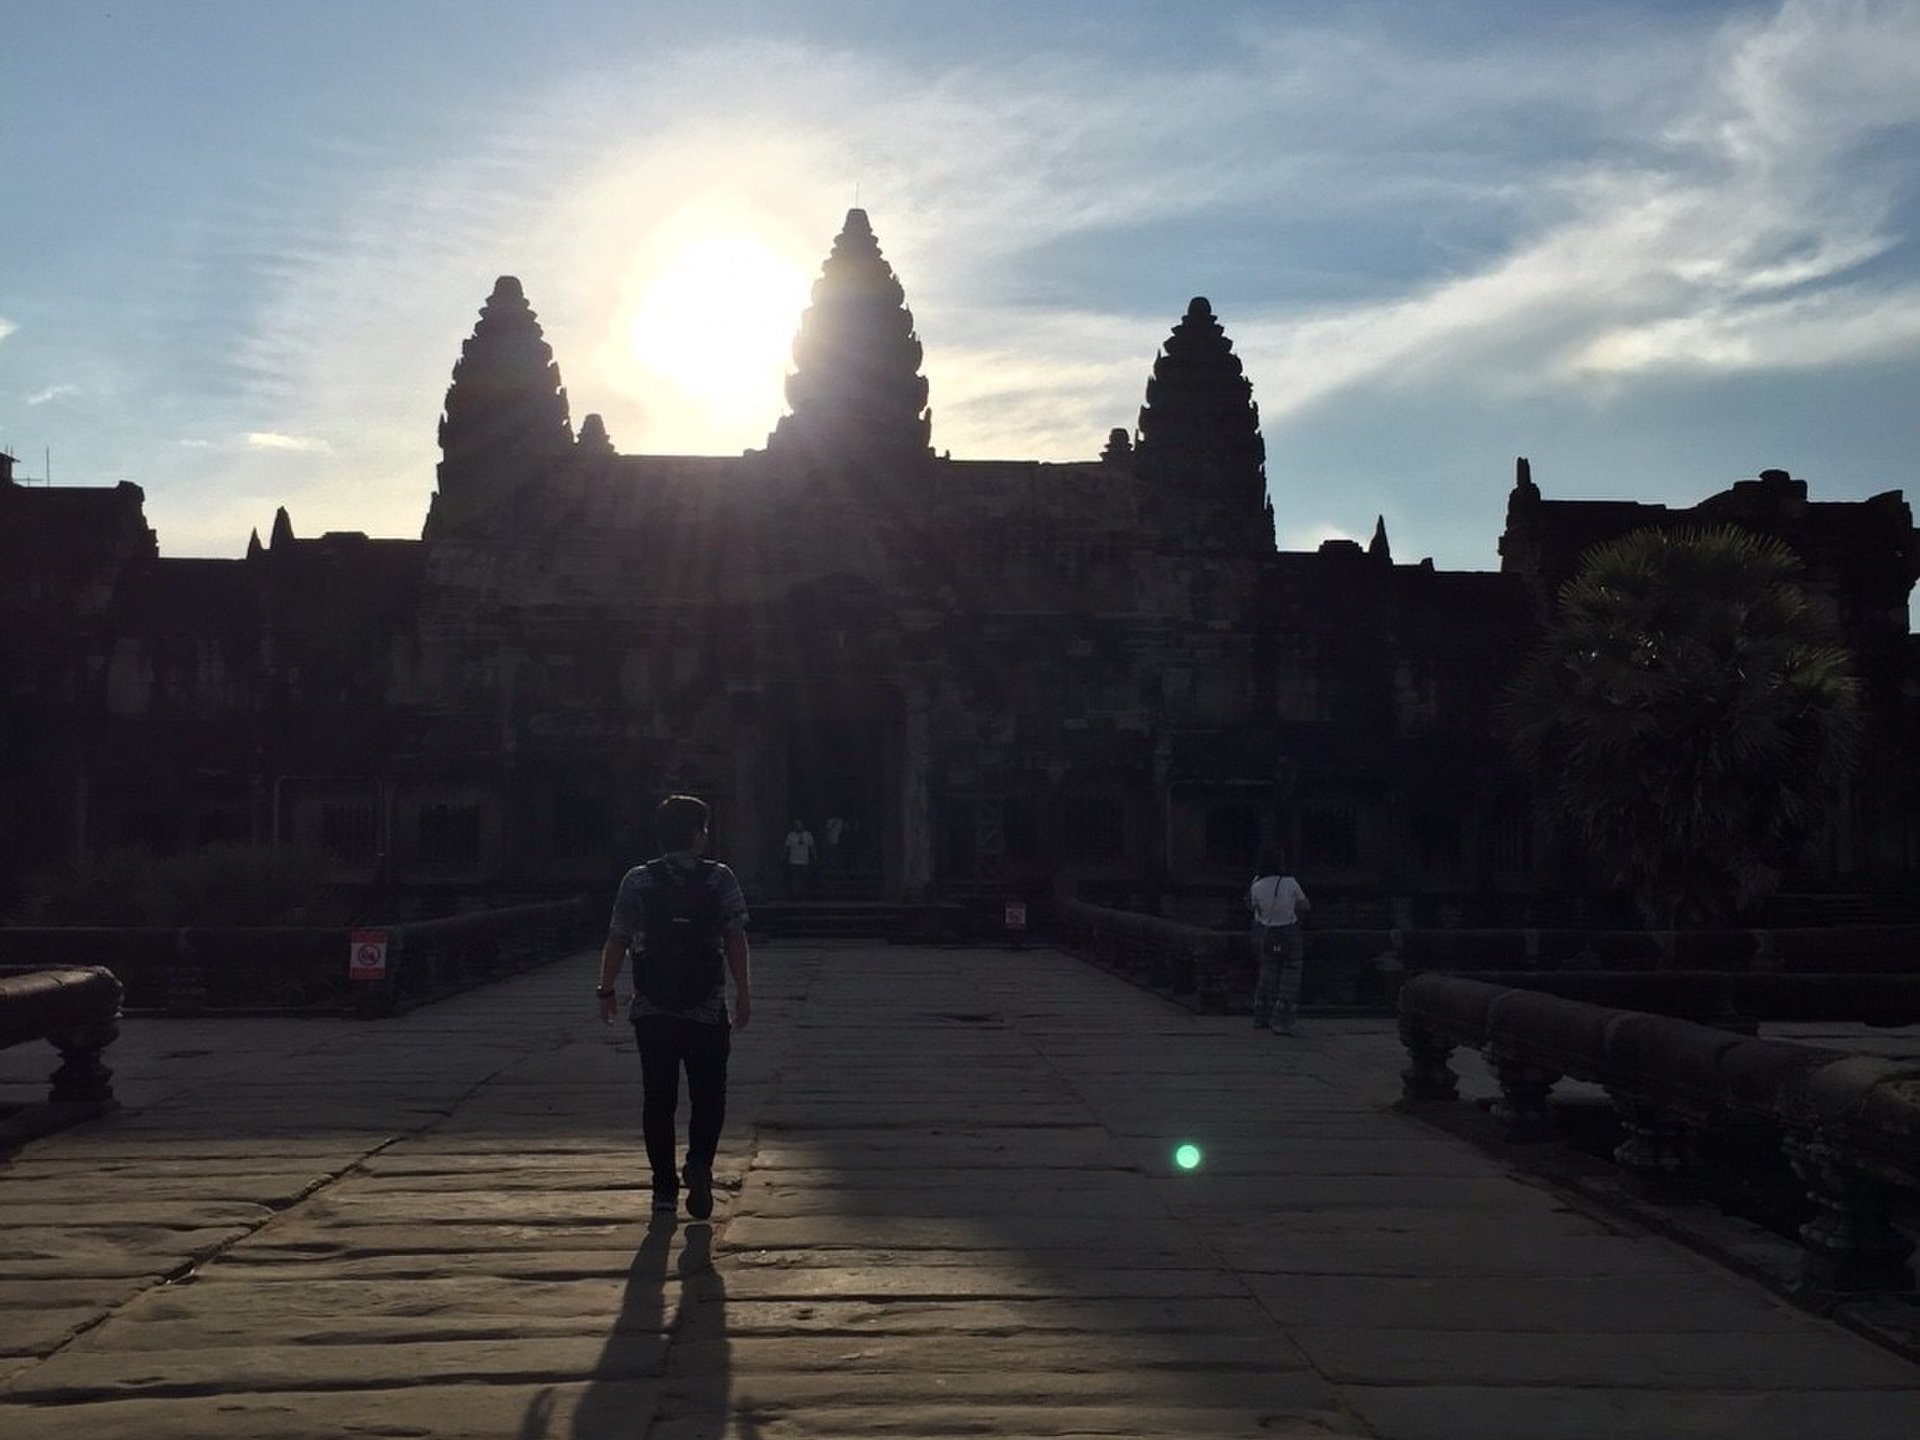 カンボジア旅行はトゥクトゥク選びが大切！
トゥクトゥク選び方とアンコールワット！